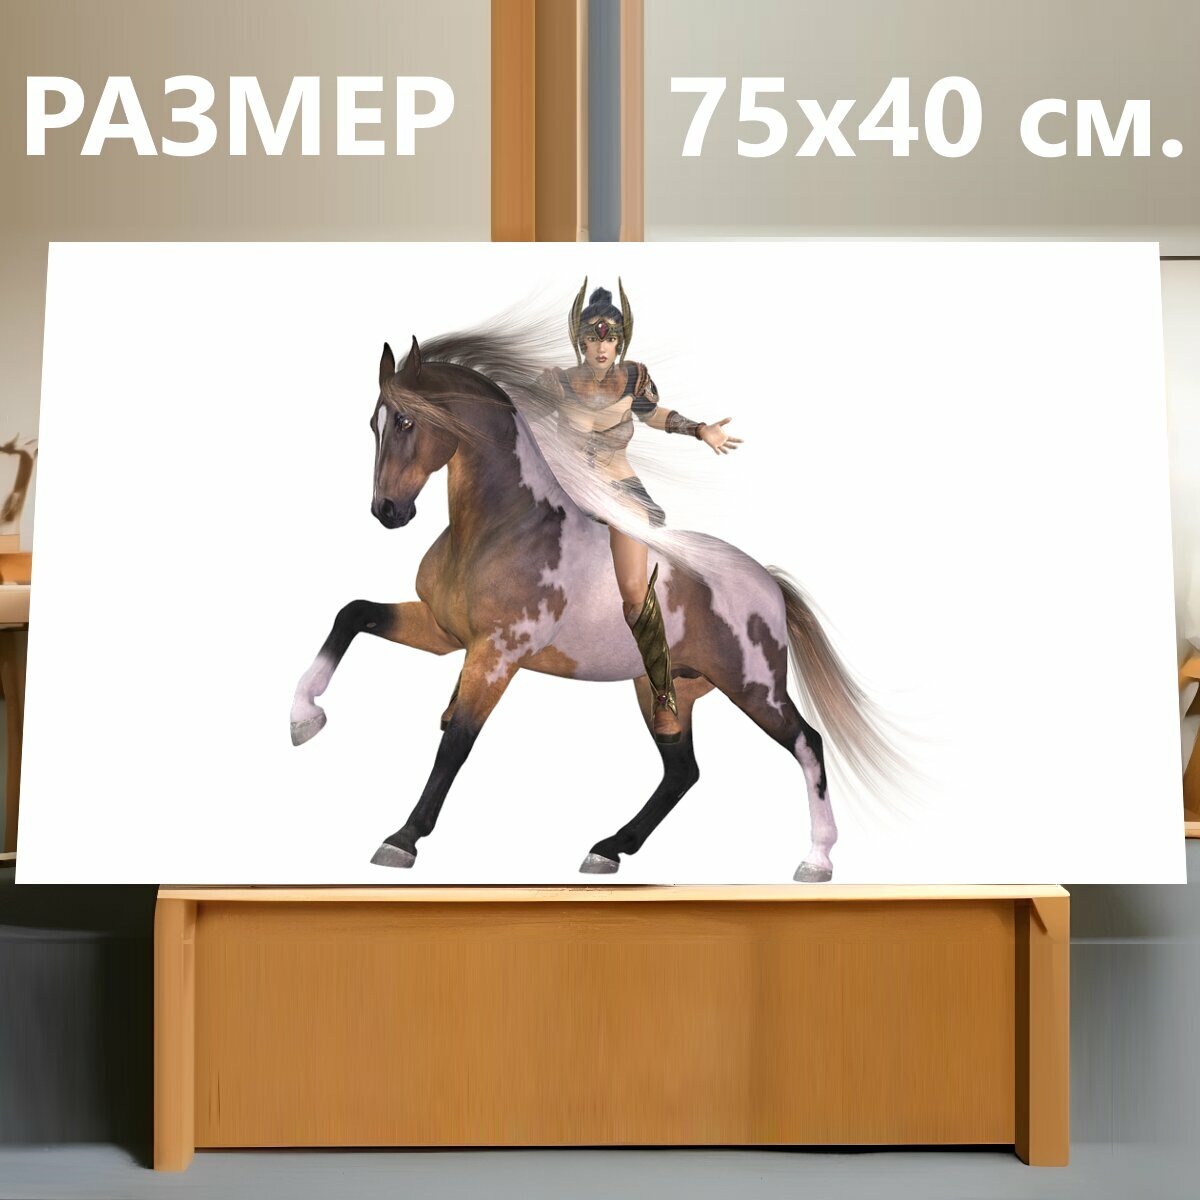 Картина на холсте "Амазонка, лошадь, изолированный" на подрамнике 75х40 см. для интерьера